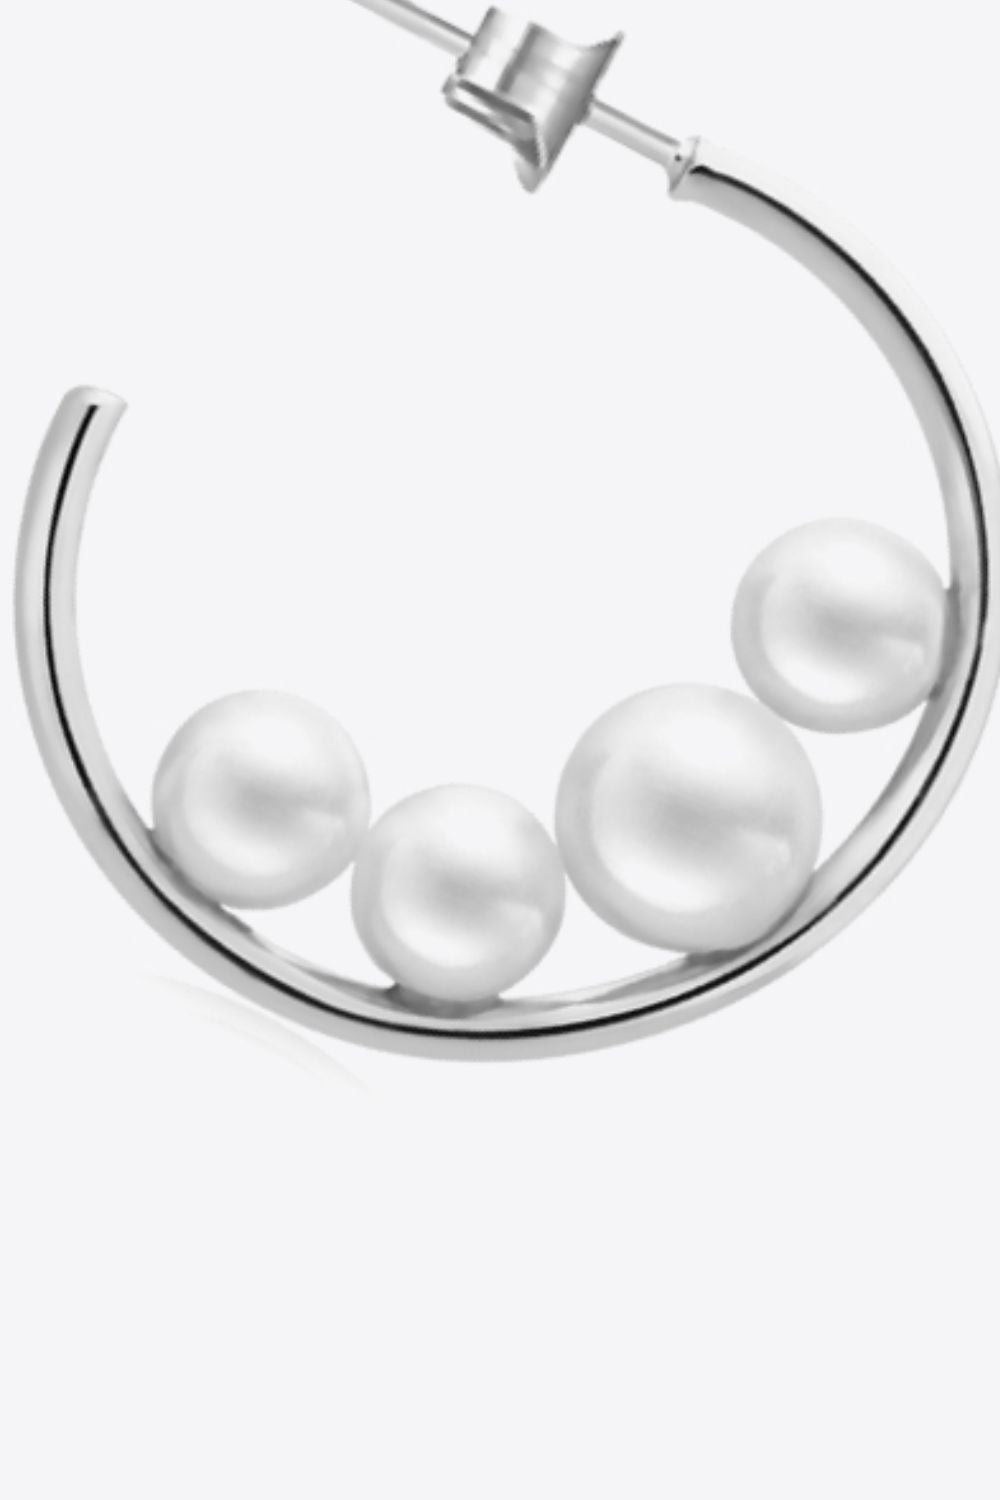 Can't Stop Your Shine Pearl C-Hoop Earrings - Earrings - FITGGINS